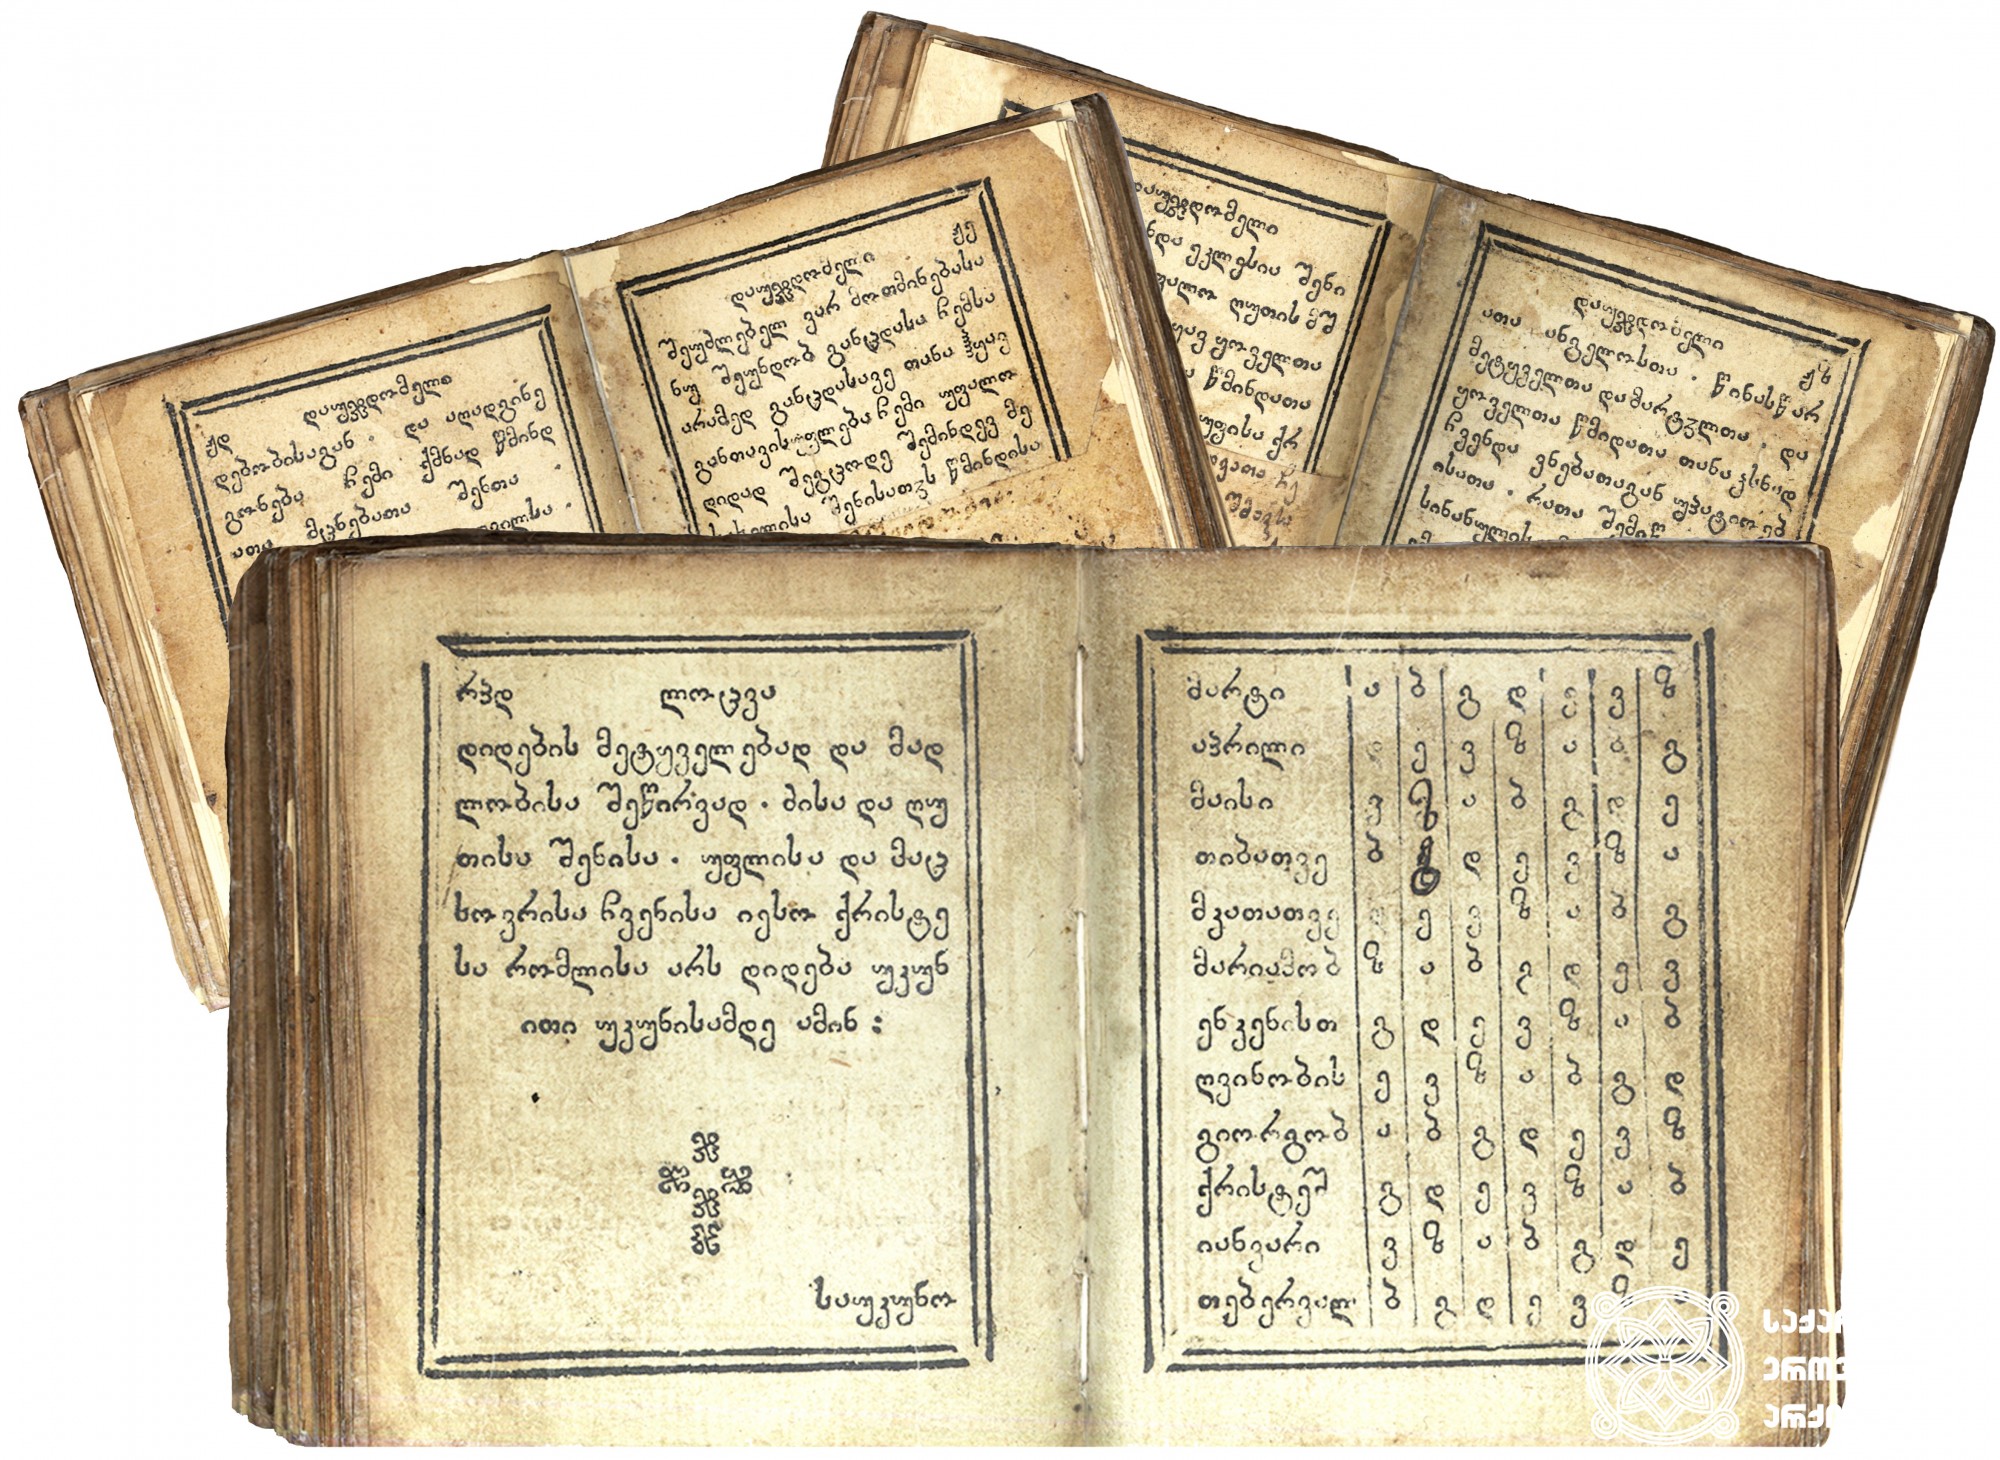 დაუჯდომელი <br>
ტფილისი, 1790 <br>
ერეკლე II-ის სტამბა <br>
მწერალი: ქრისტესია დიონოსის (ხუცის) ძე  <br>
მესტამბე: რაზმაძე რომანოზ ზუბაშვილი <br>
დაზგის მმართველი: ქრისტეფორე გურამიშვილი <br>

Akathist <br>
Tfilisi, 1790 <br>
Printing house of Erekle II <br>
Writer: Kristesia, son of Dionosi <br>
Printer: Razmadze Romanoz Zubashvili <br>